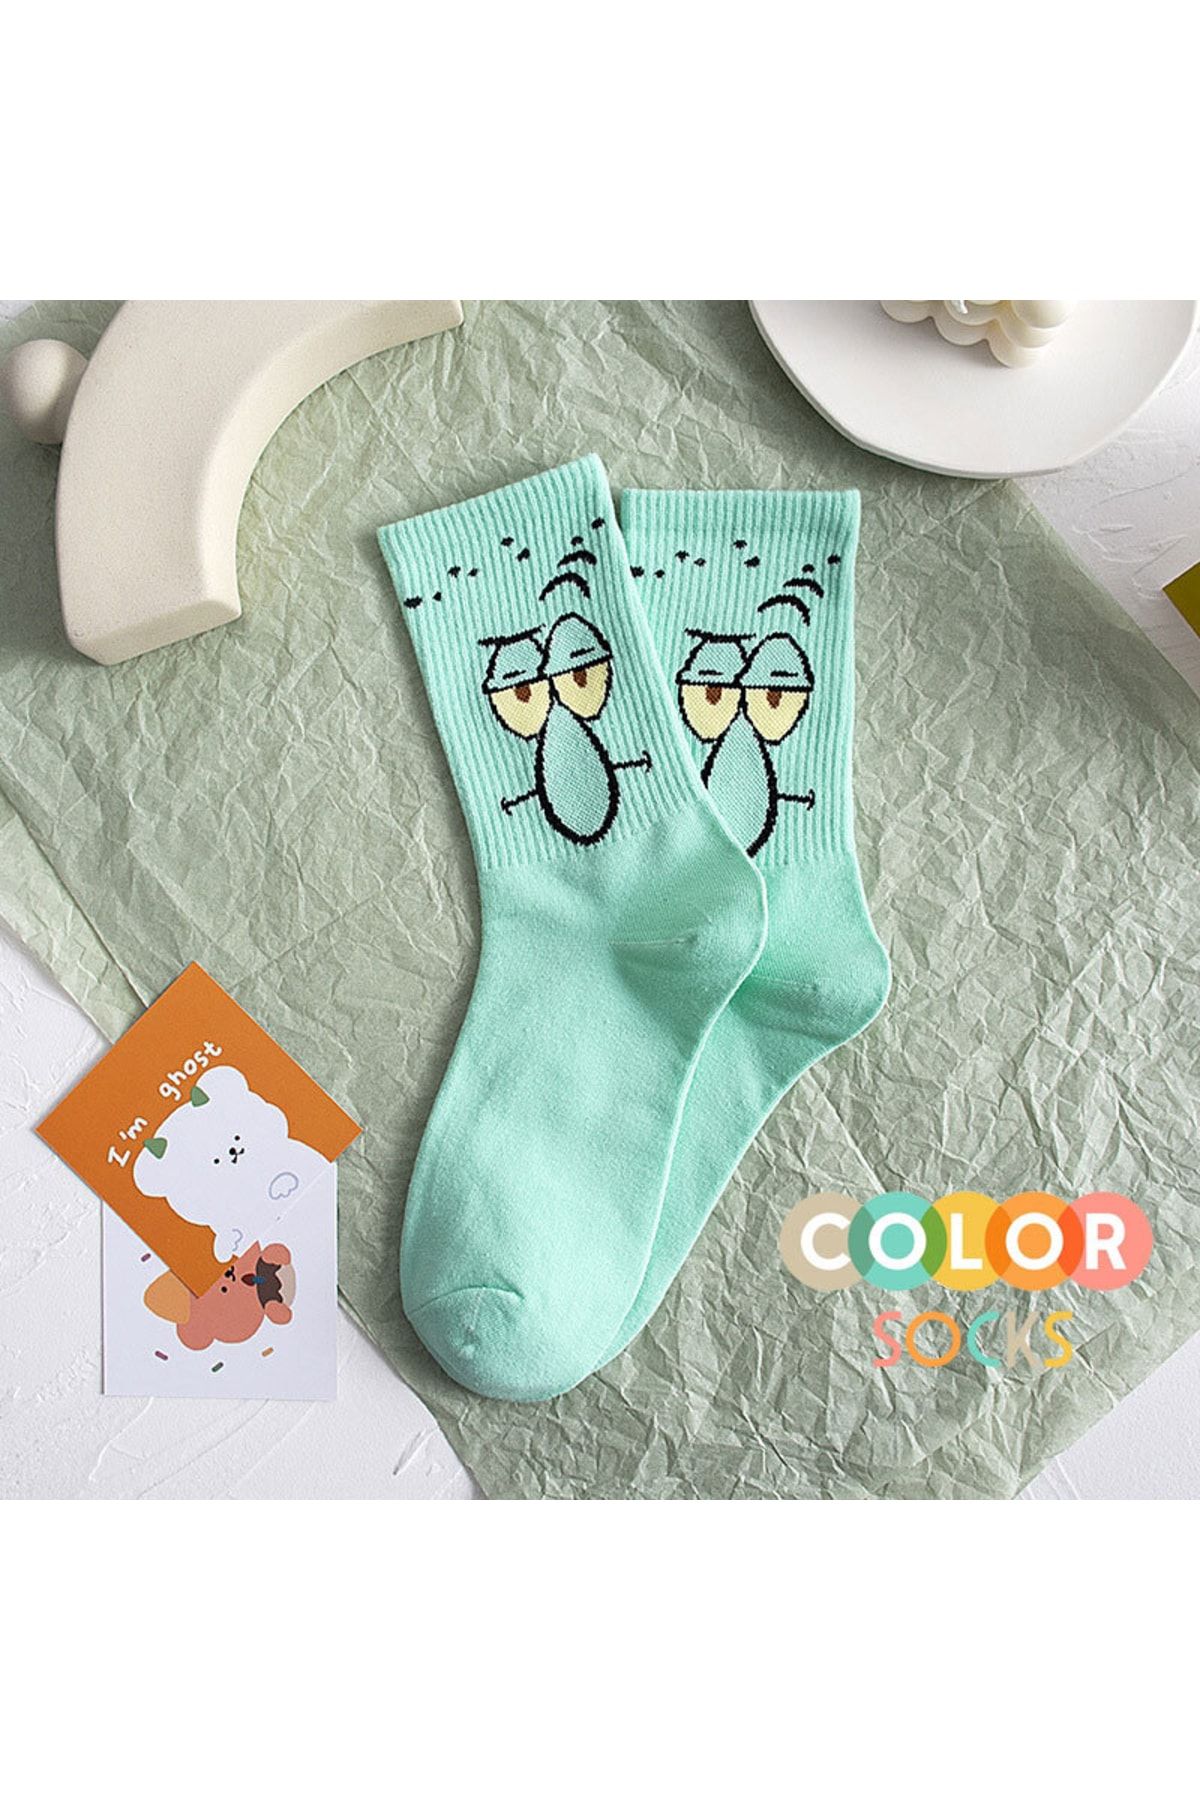 Color Socks Turkuaz Renk Sevimli Karakter Çorap